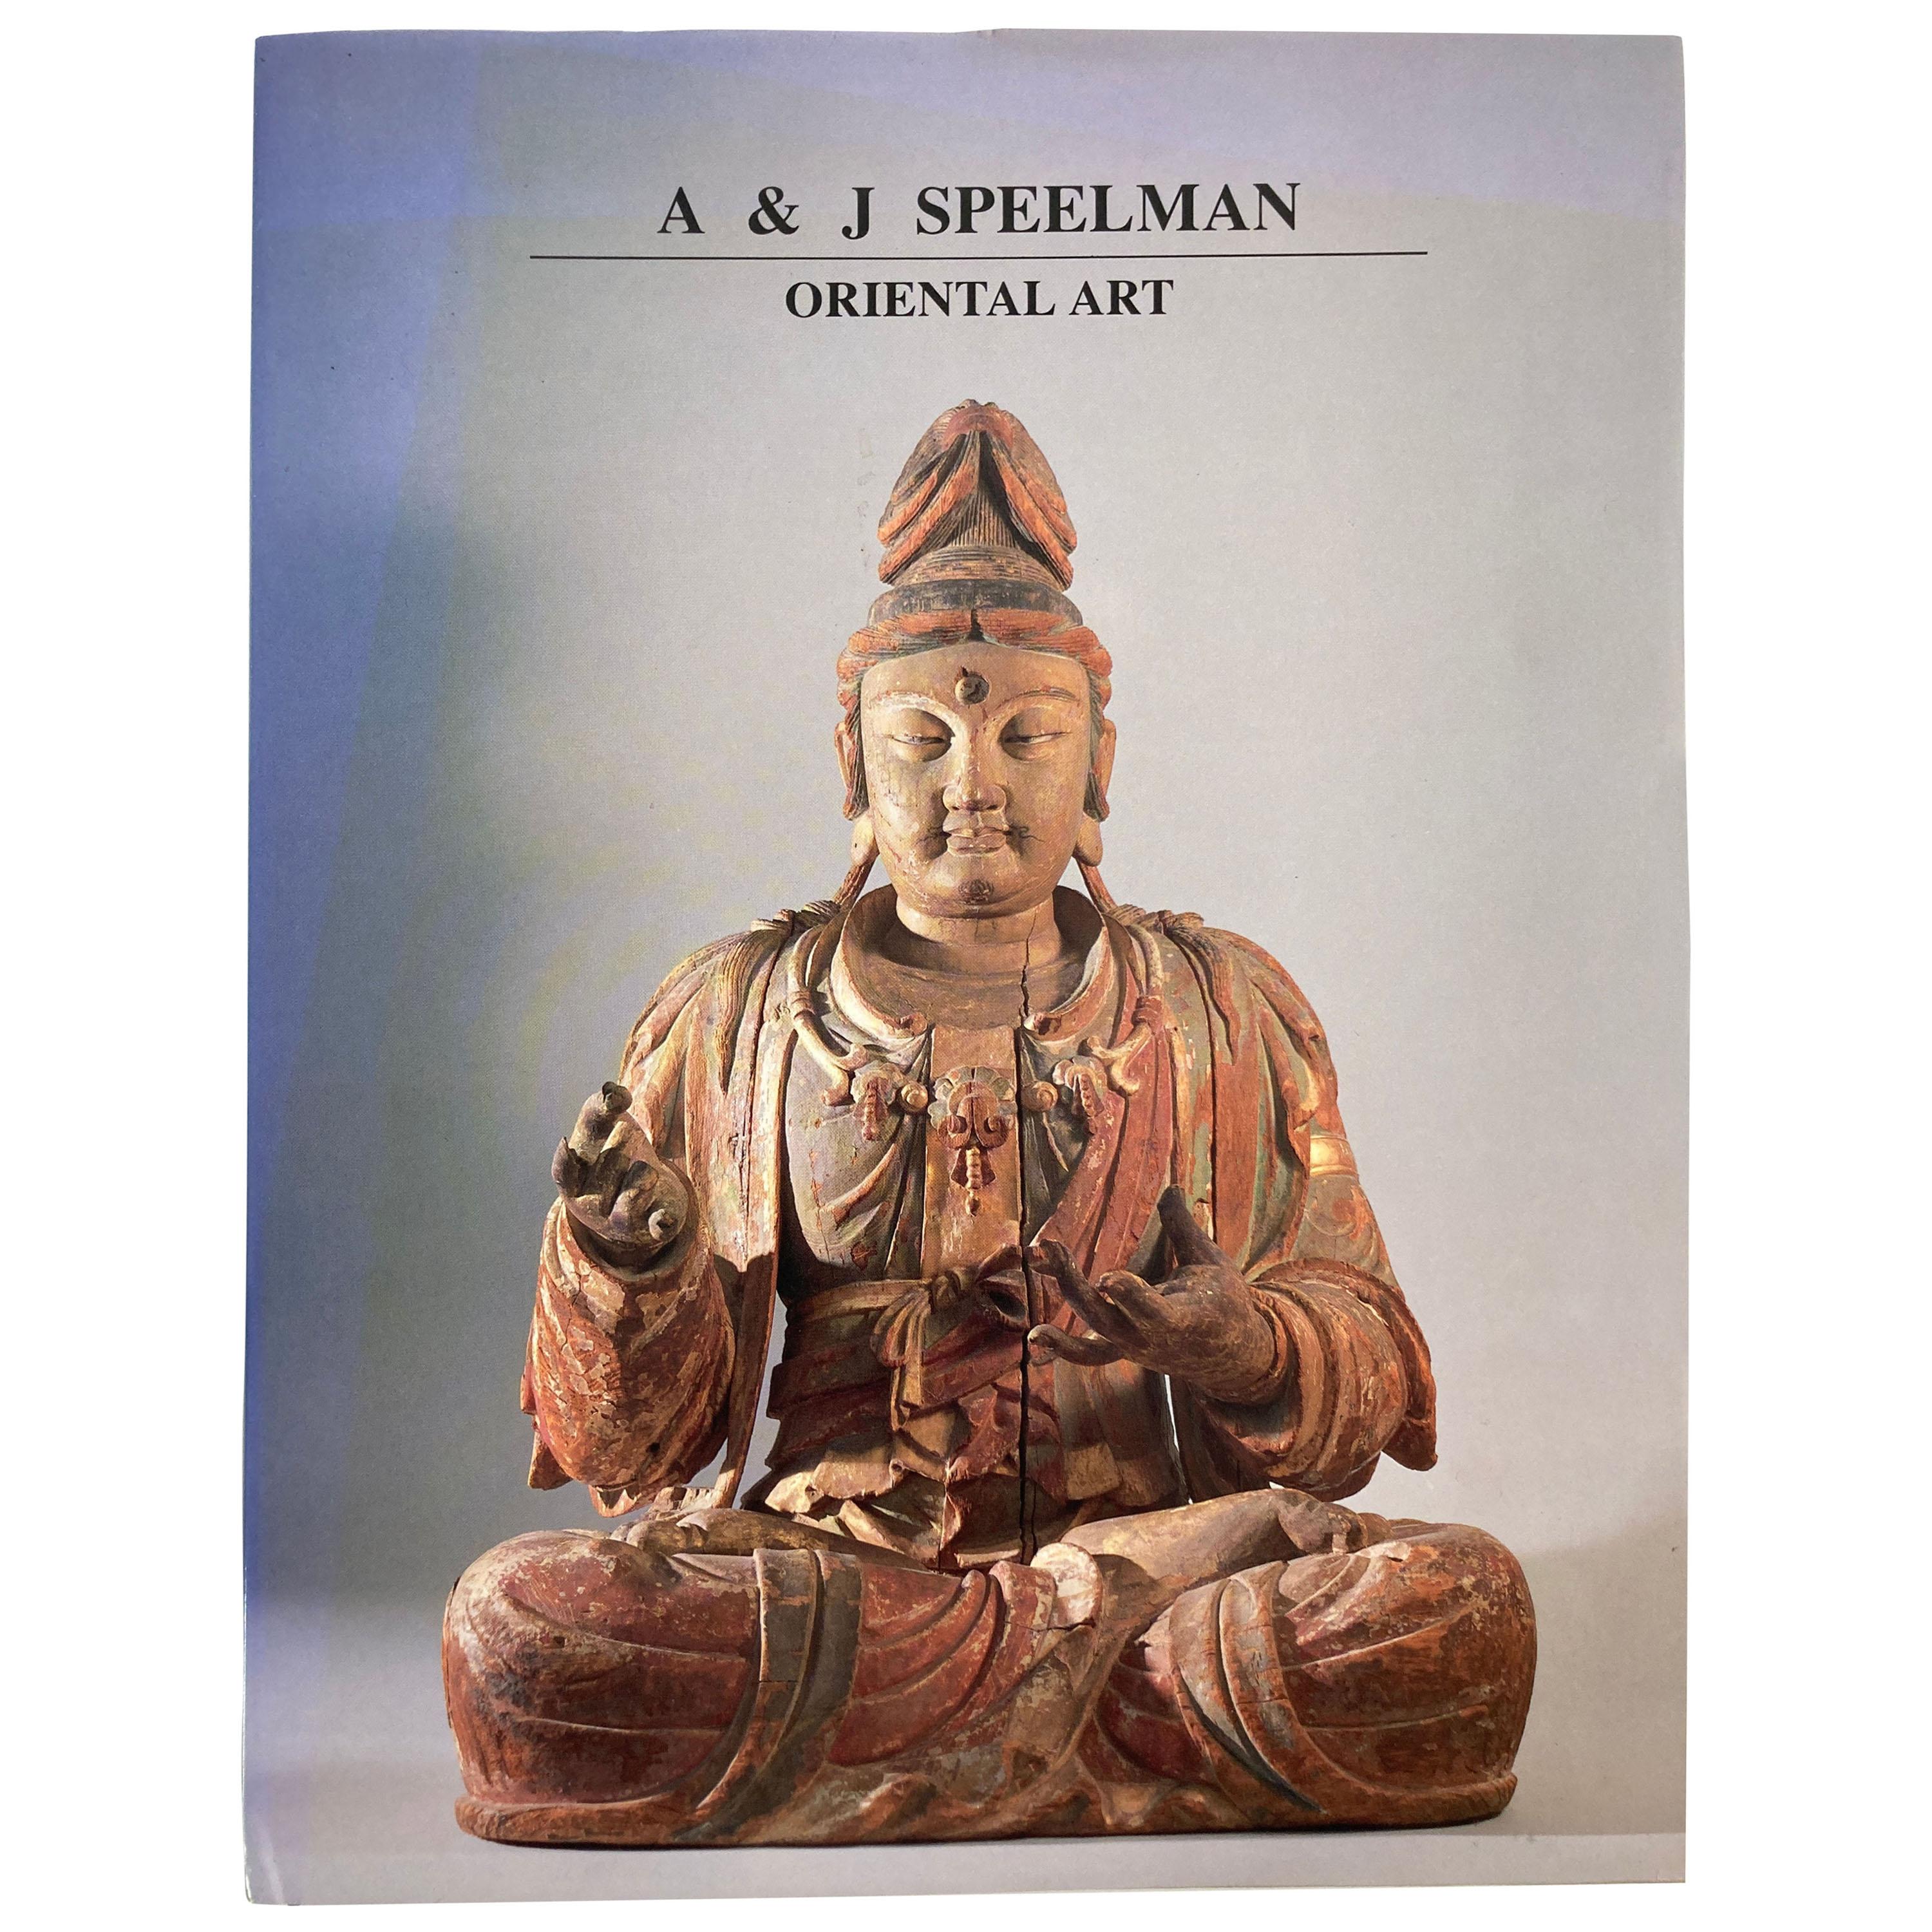 Oriental Art by A & J Speelman